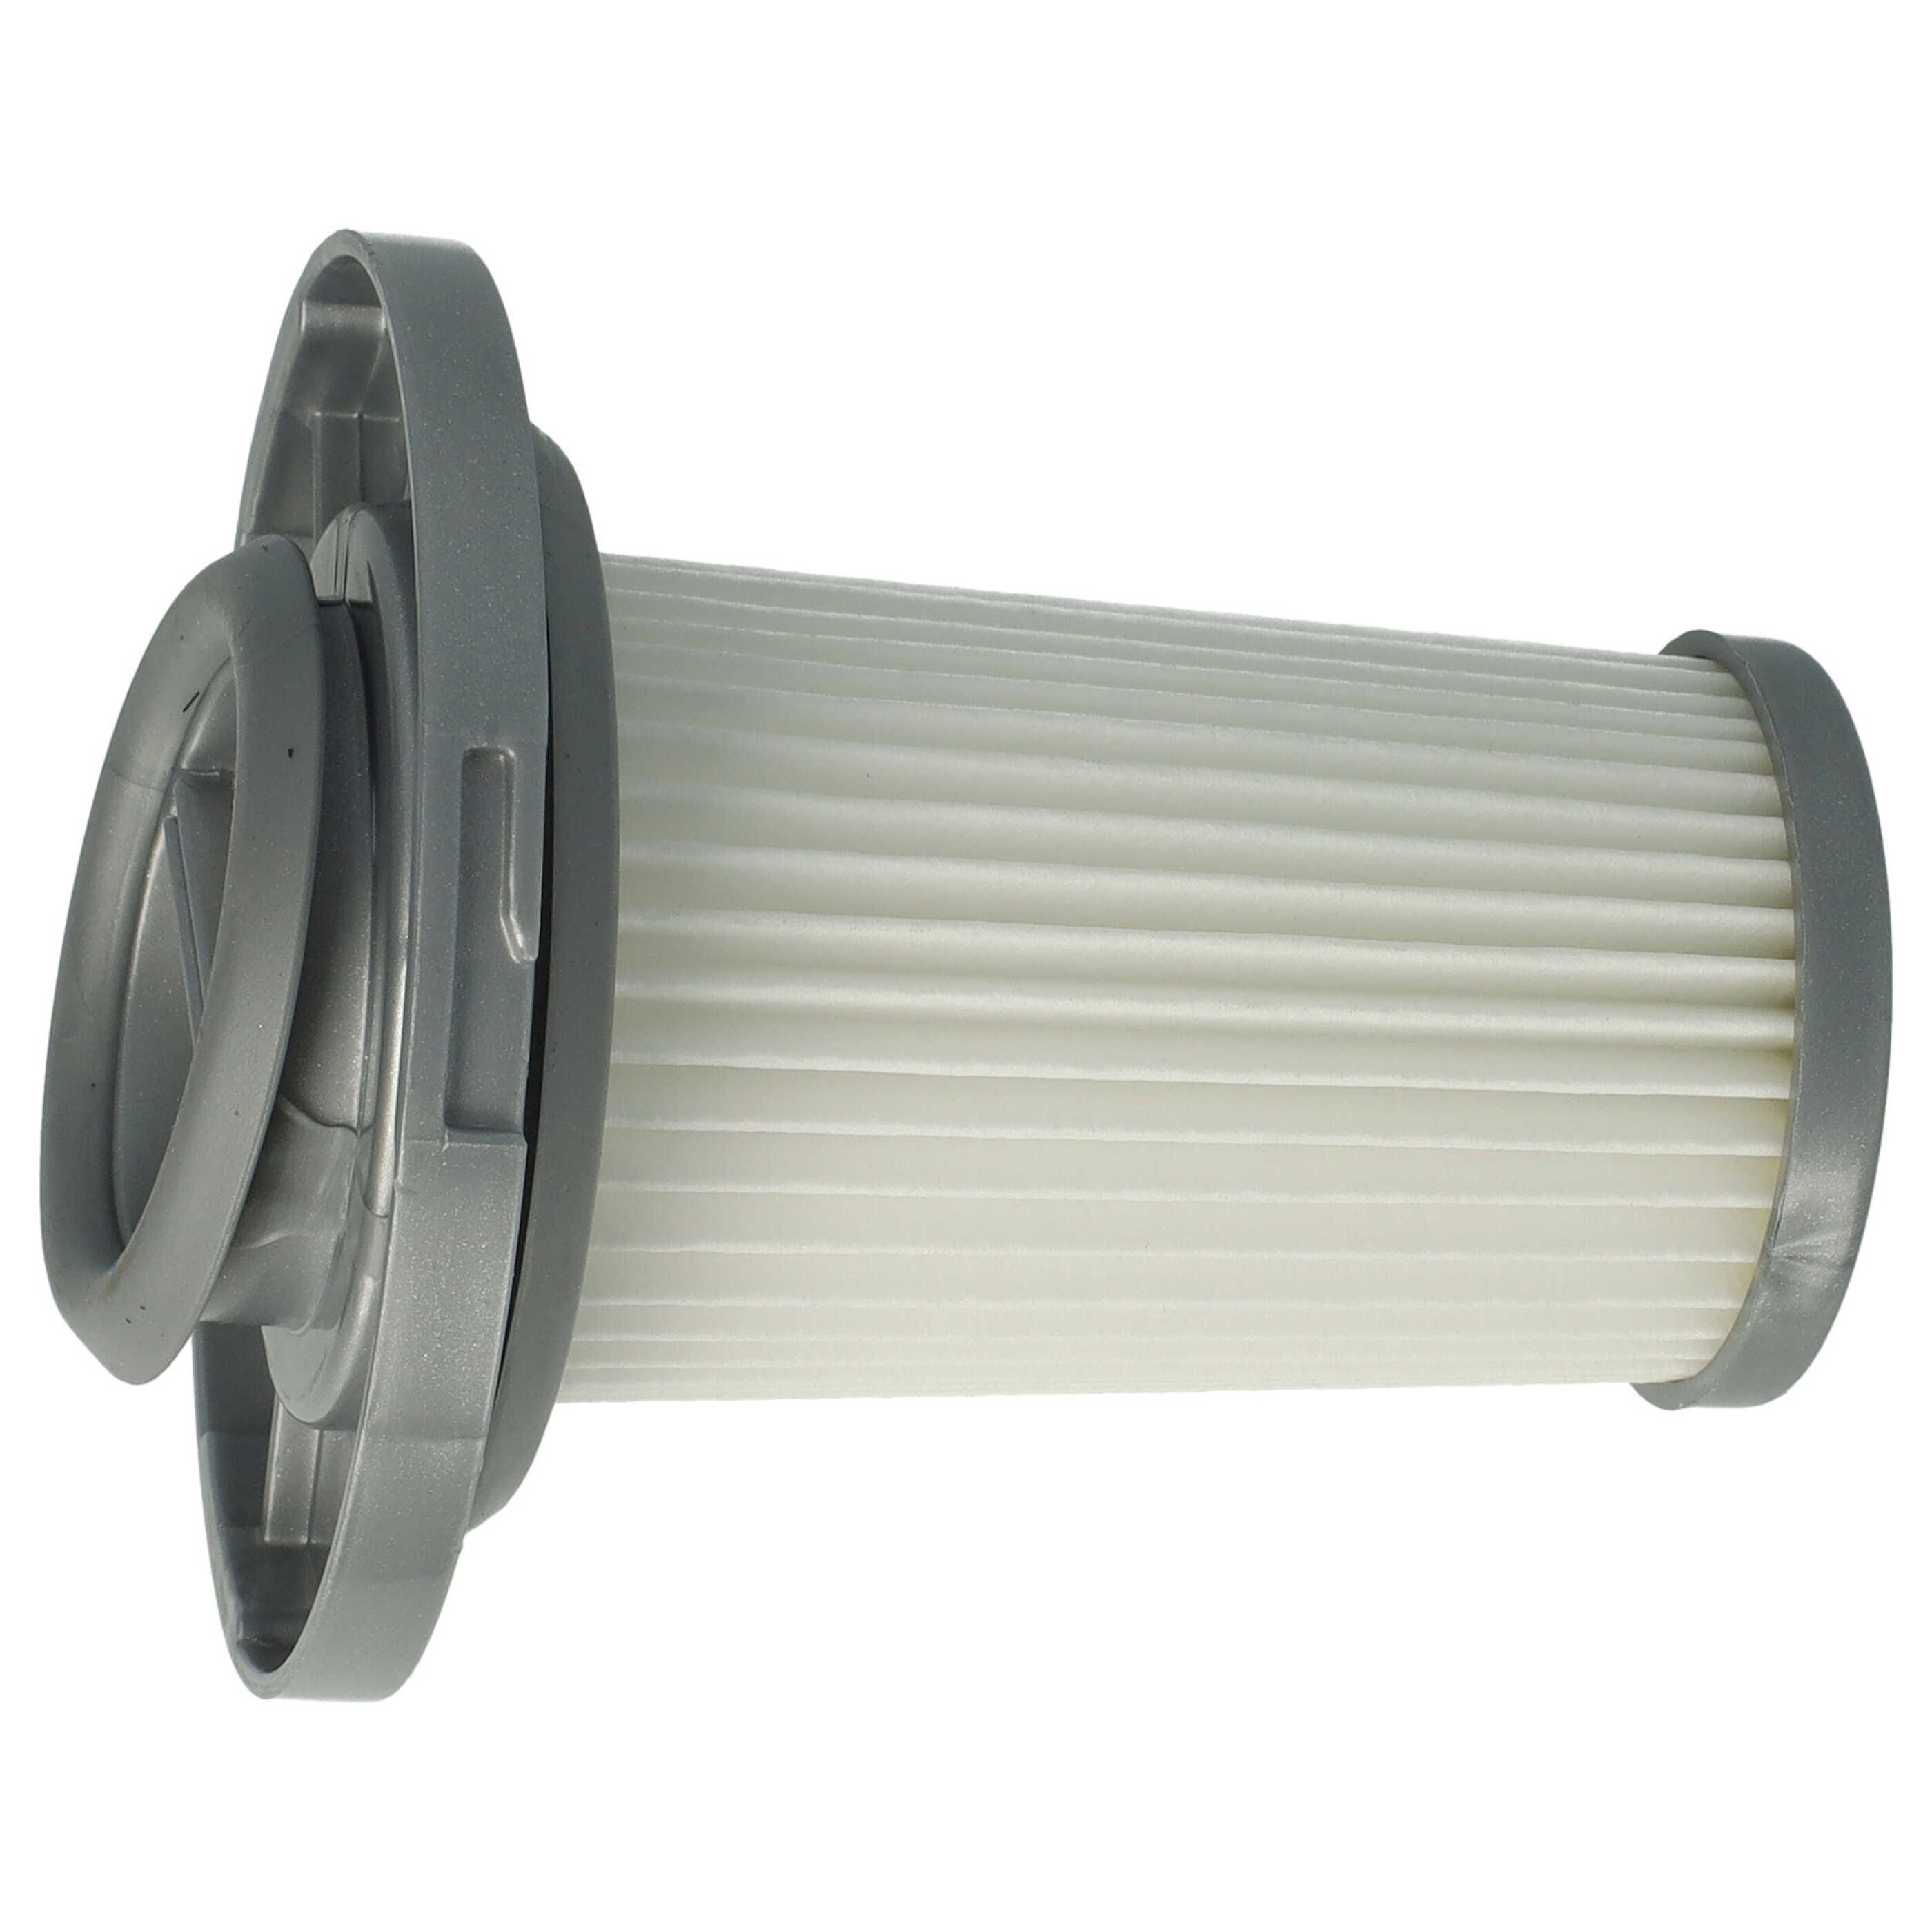 Vhbw filtro di separazione compatibile con Rowenta X-Force Flex 8.60  Allergy RH9677WO aspirapolvere - Filtro di ricambio, lavabile, bianco /  grigio